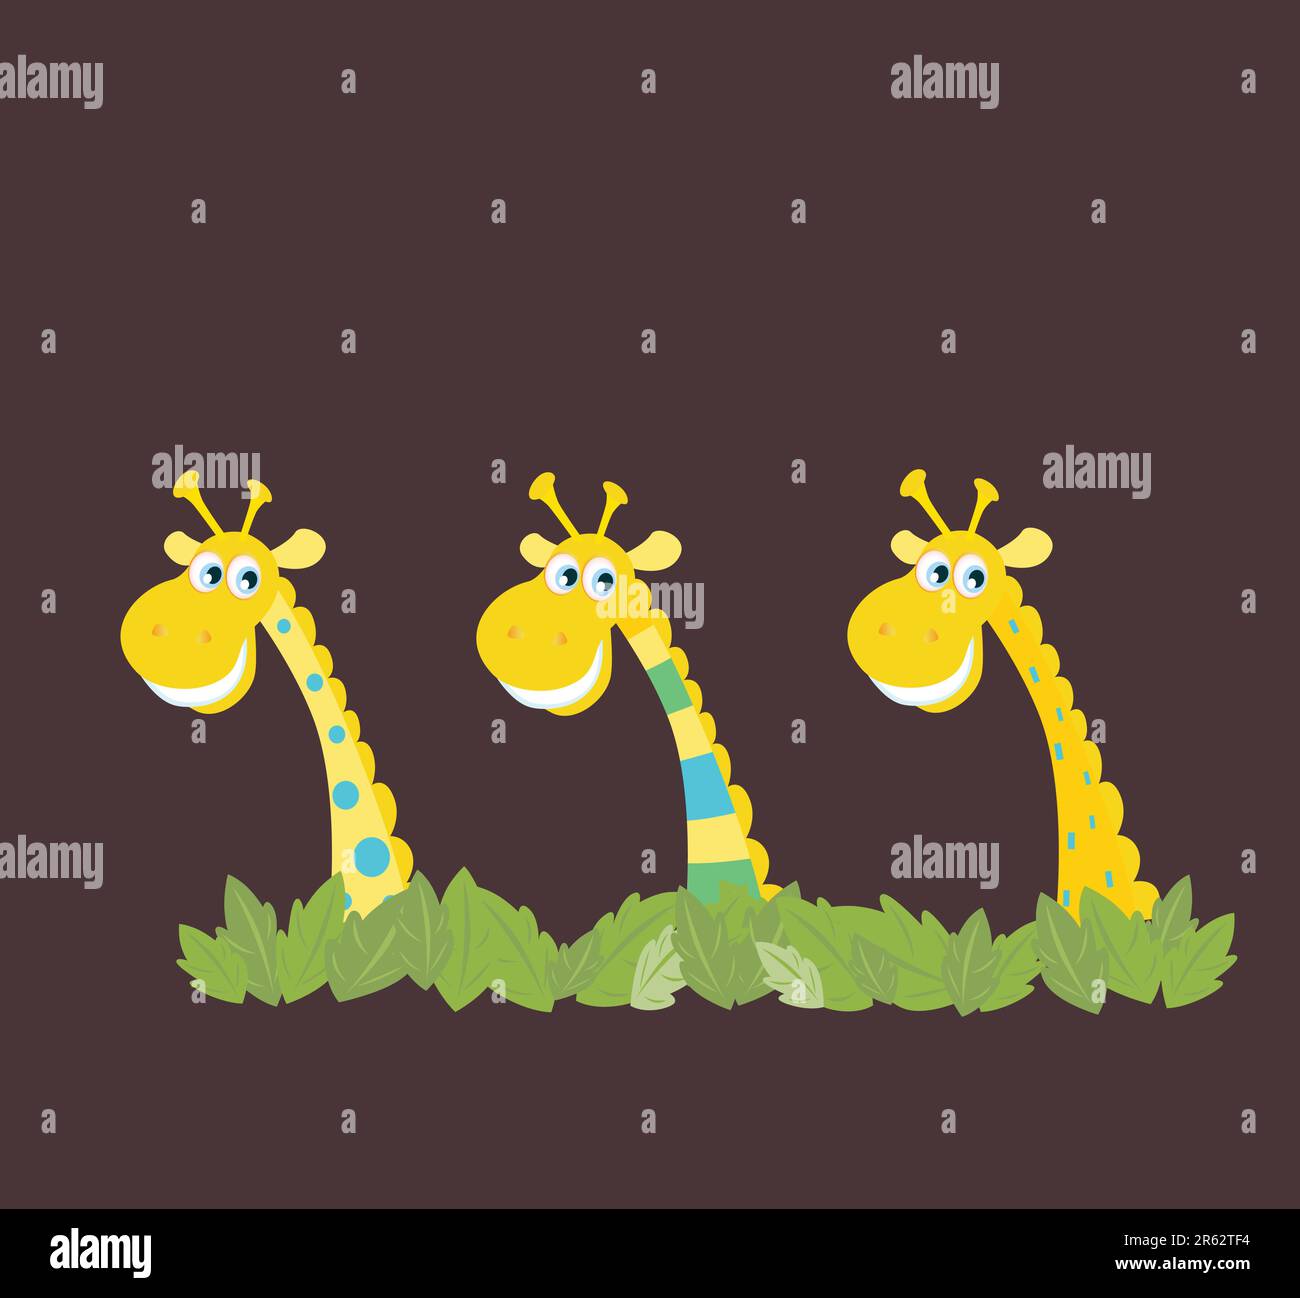 Girafes safari jaunes derrière les feuilles de jungle. Illustration vectorielle de dessins animés d'animaux drôles dans un style rétro. Illustration de Vecteur